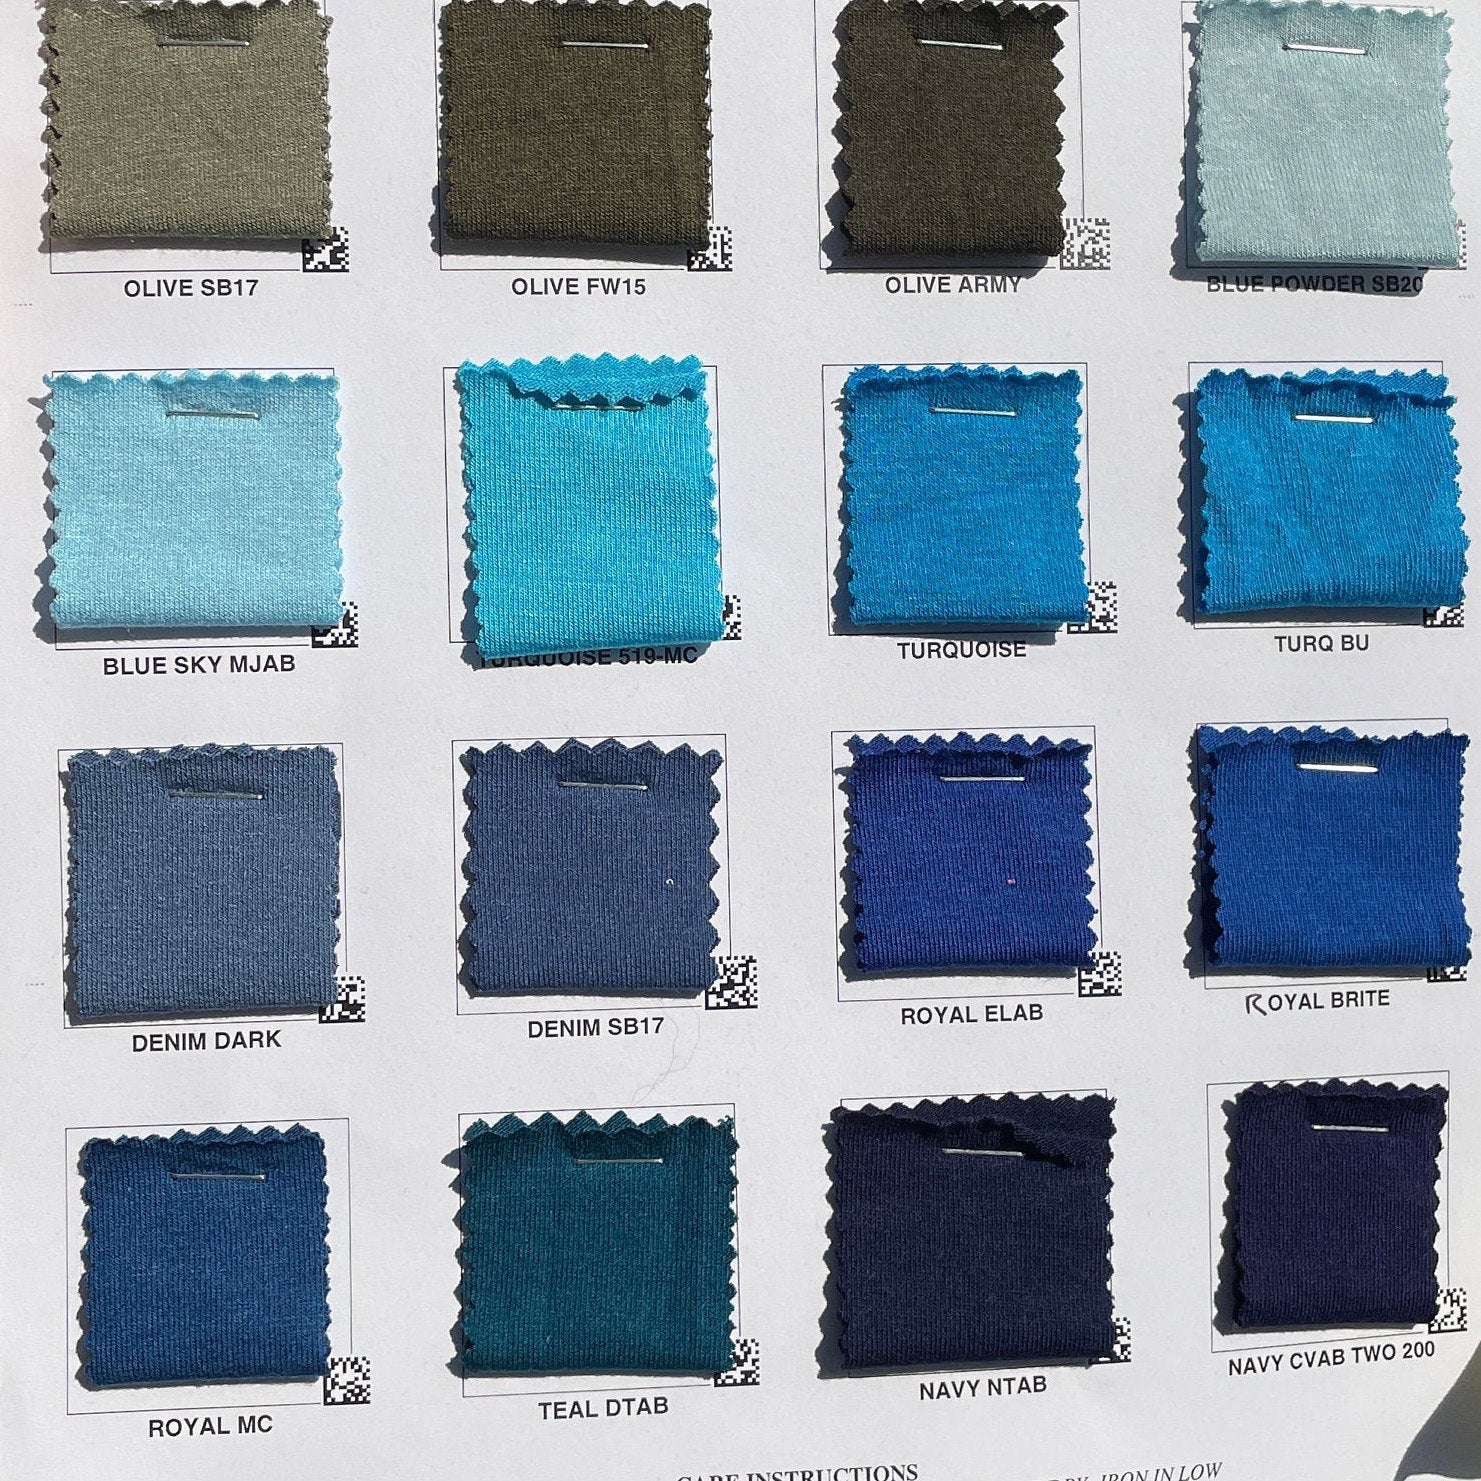 CLEARANCE- 1 YARD Cotton/Rayon/Spandex Knit Jersey Fabric – Stitch